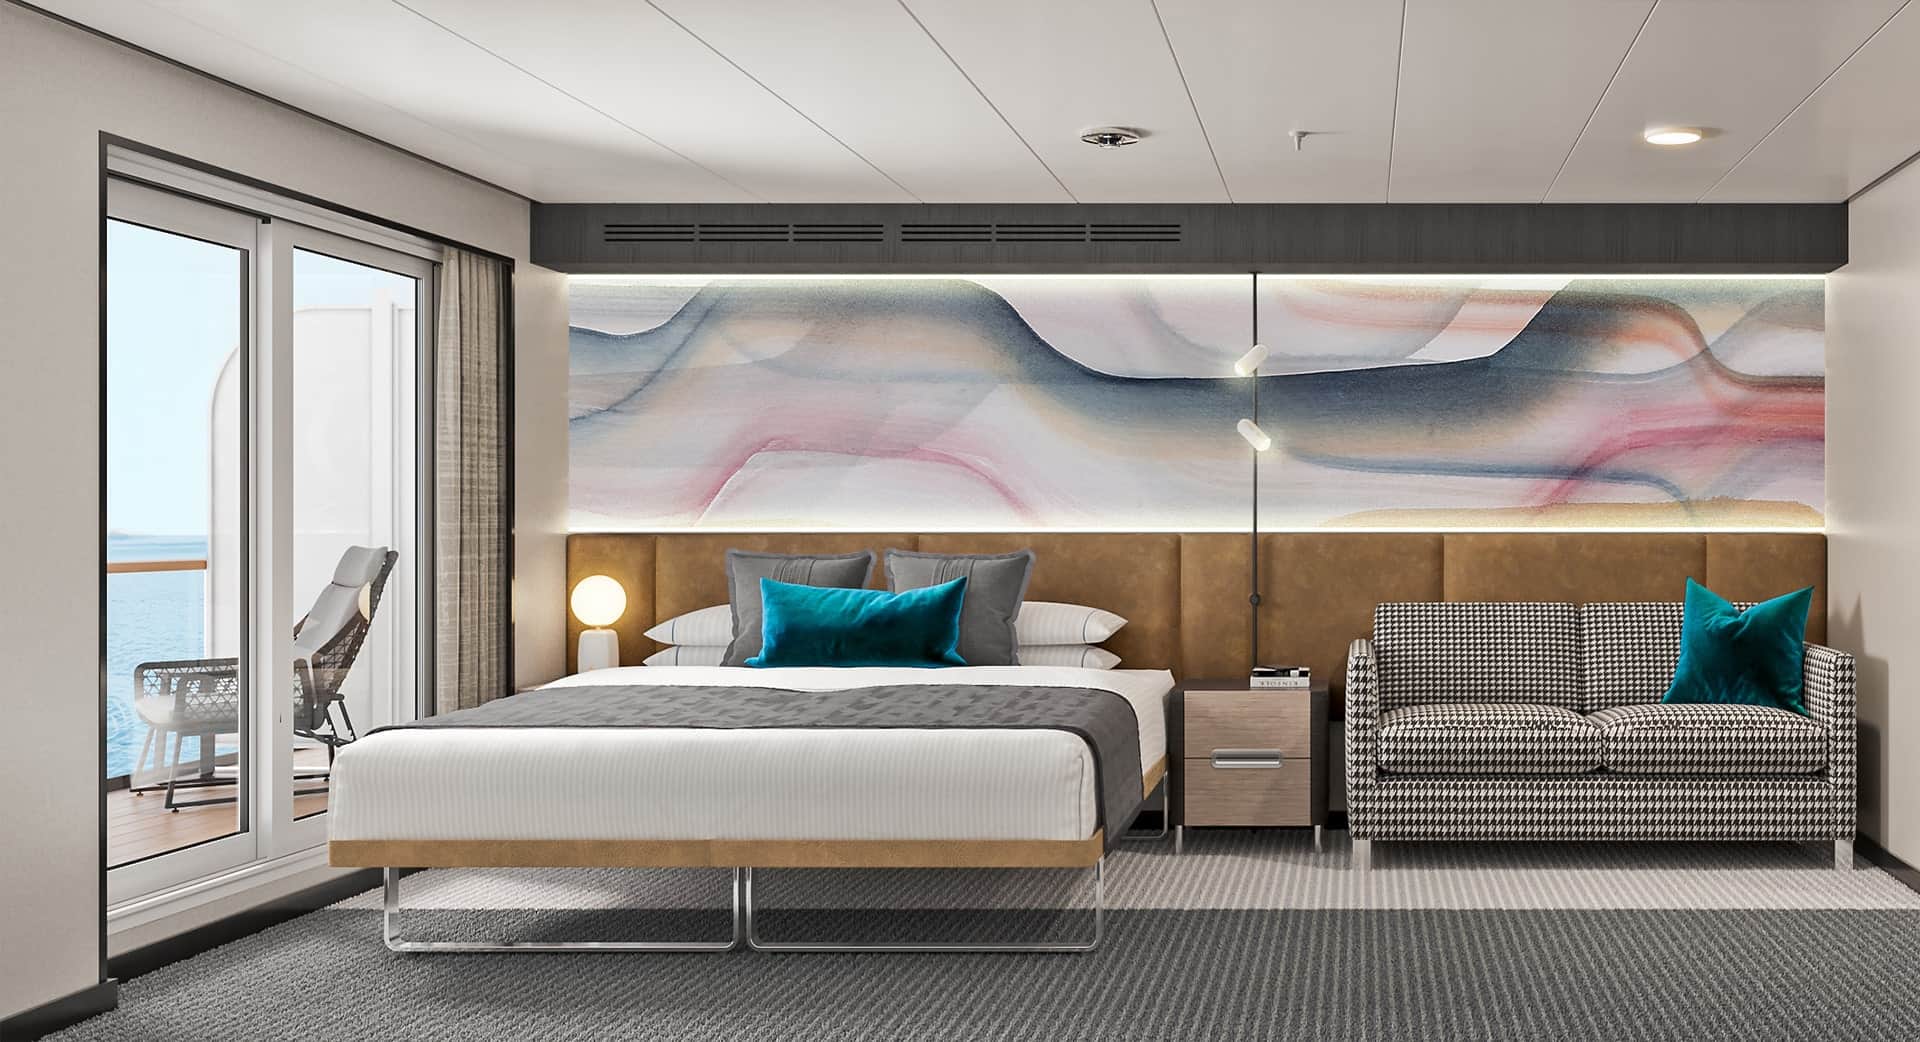 norwegian cruise line luxury accommodations